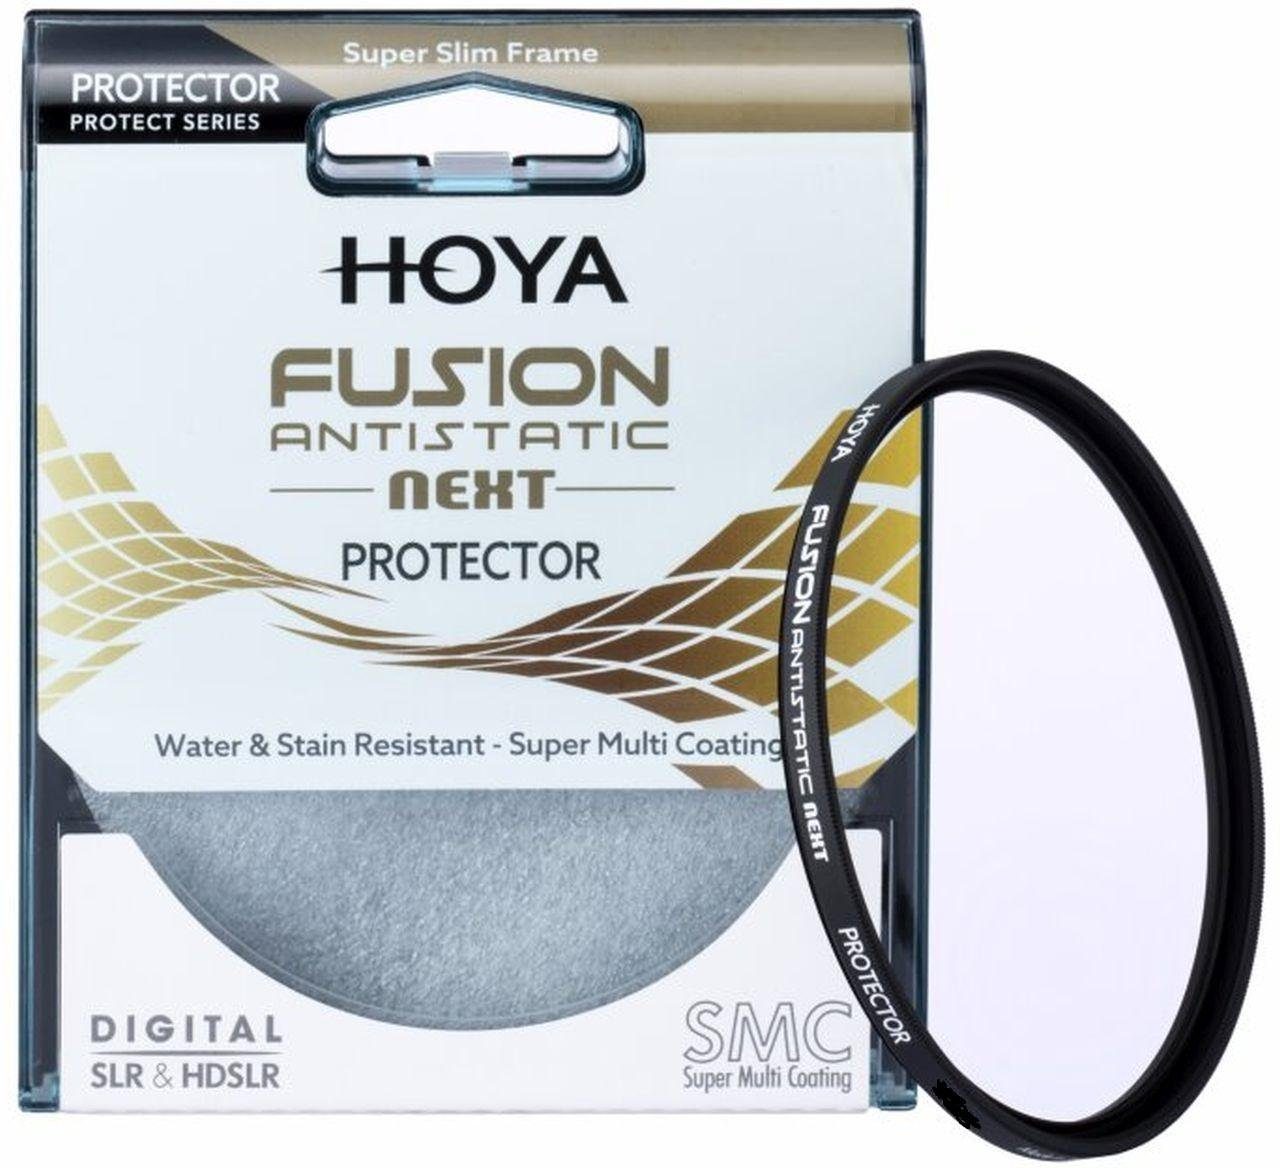 Hoya Fusion Antistatic Next Protector 82mm Objektivzubehör